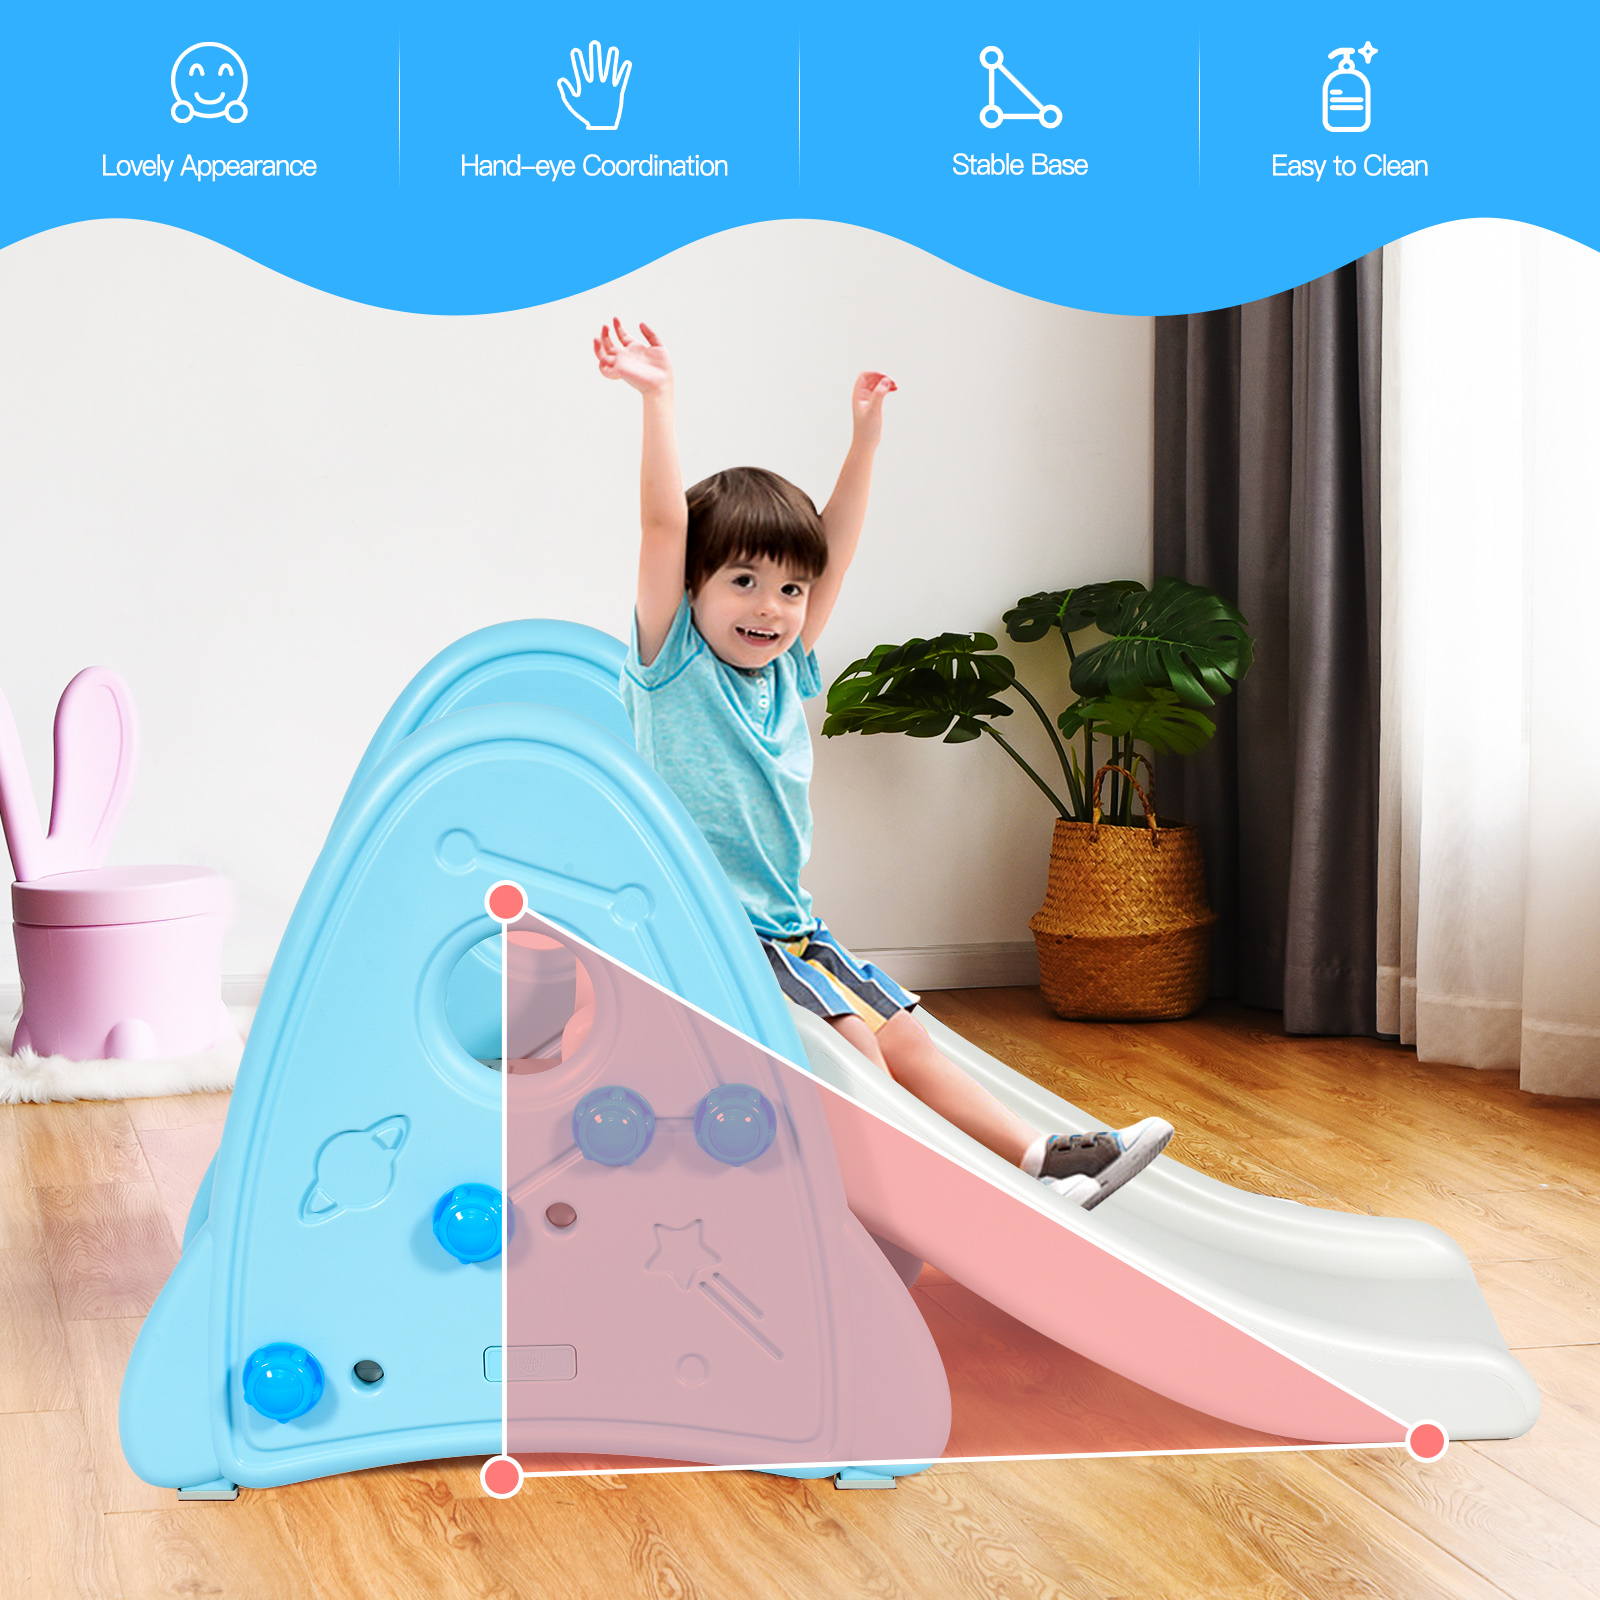 Topbuy Kids Slide Toys Indoor and Outdoor Climber Slide Set for Boys Girls Blue